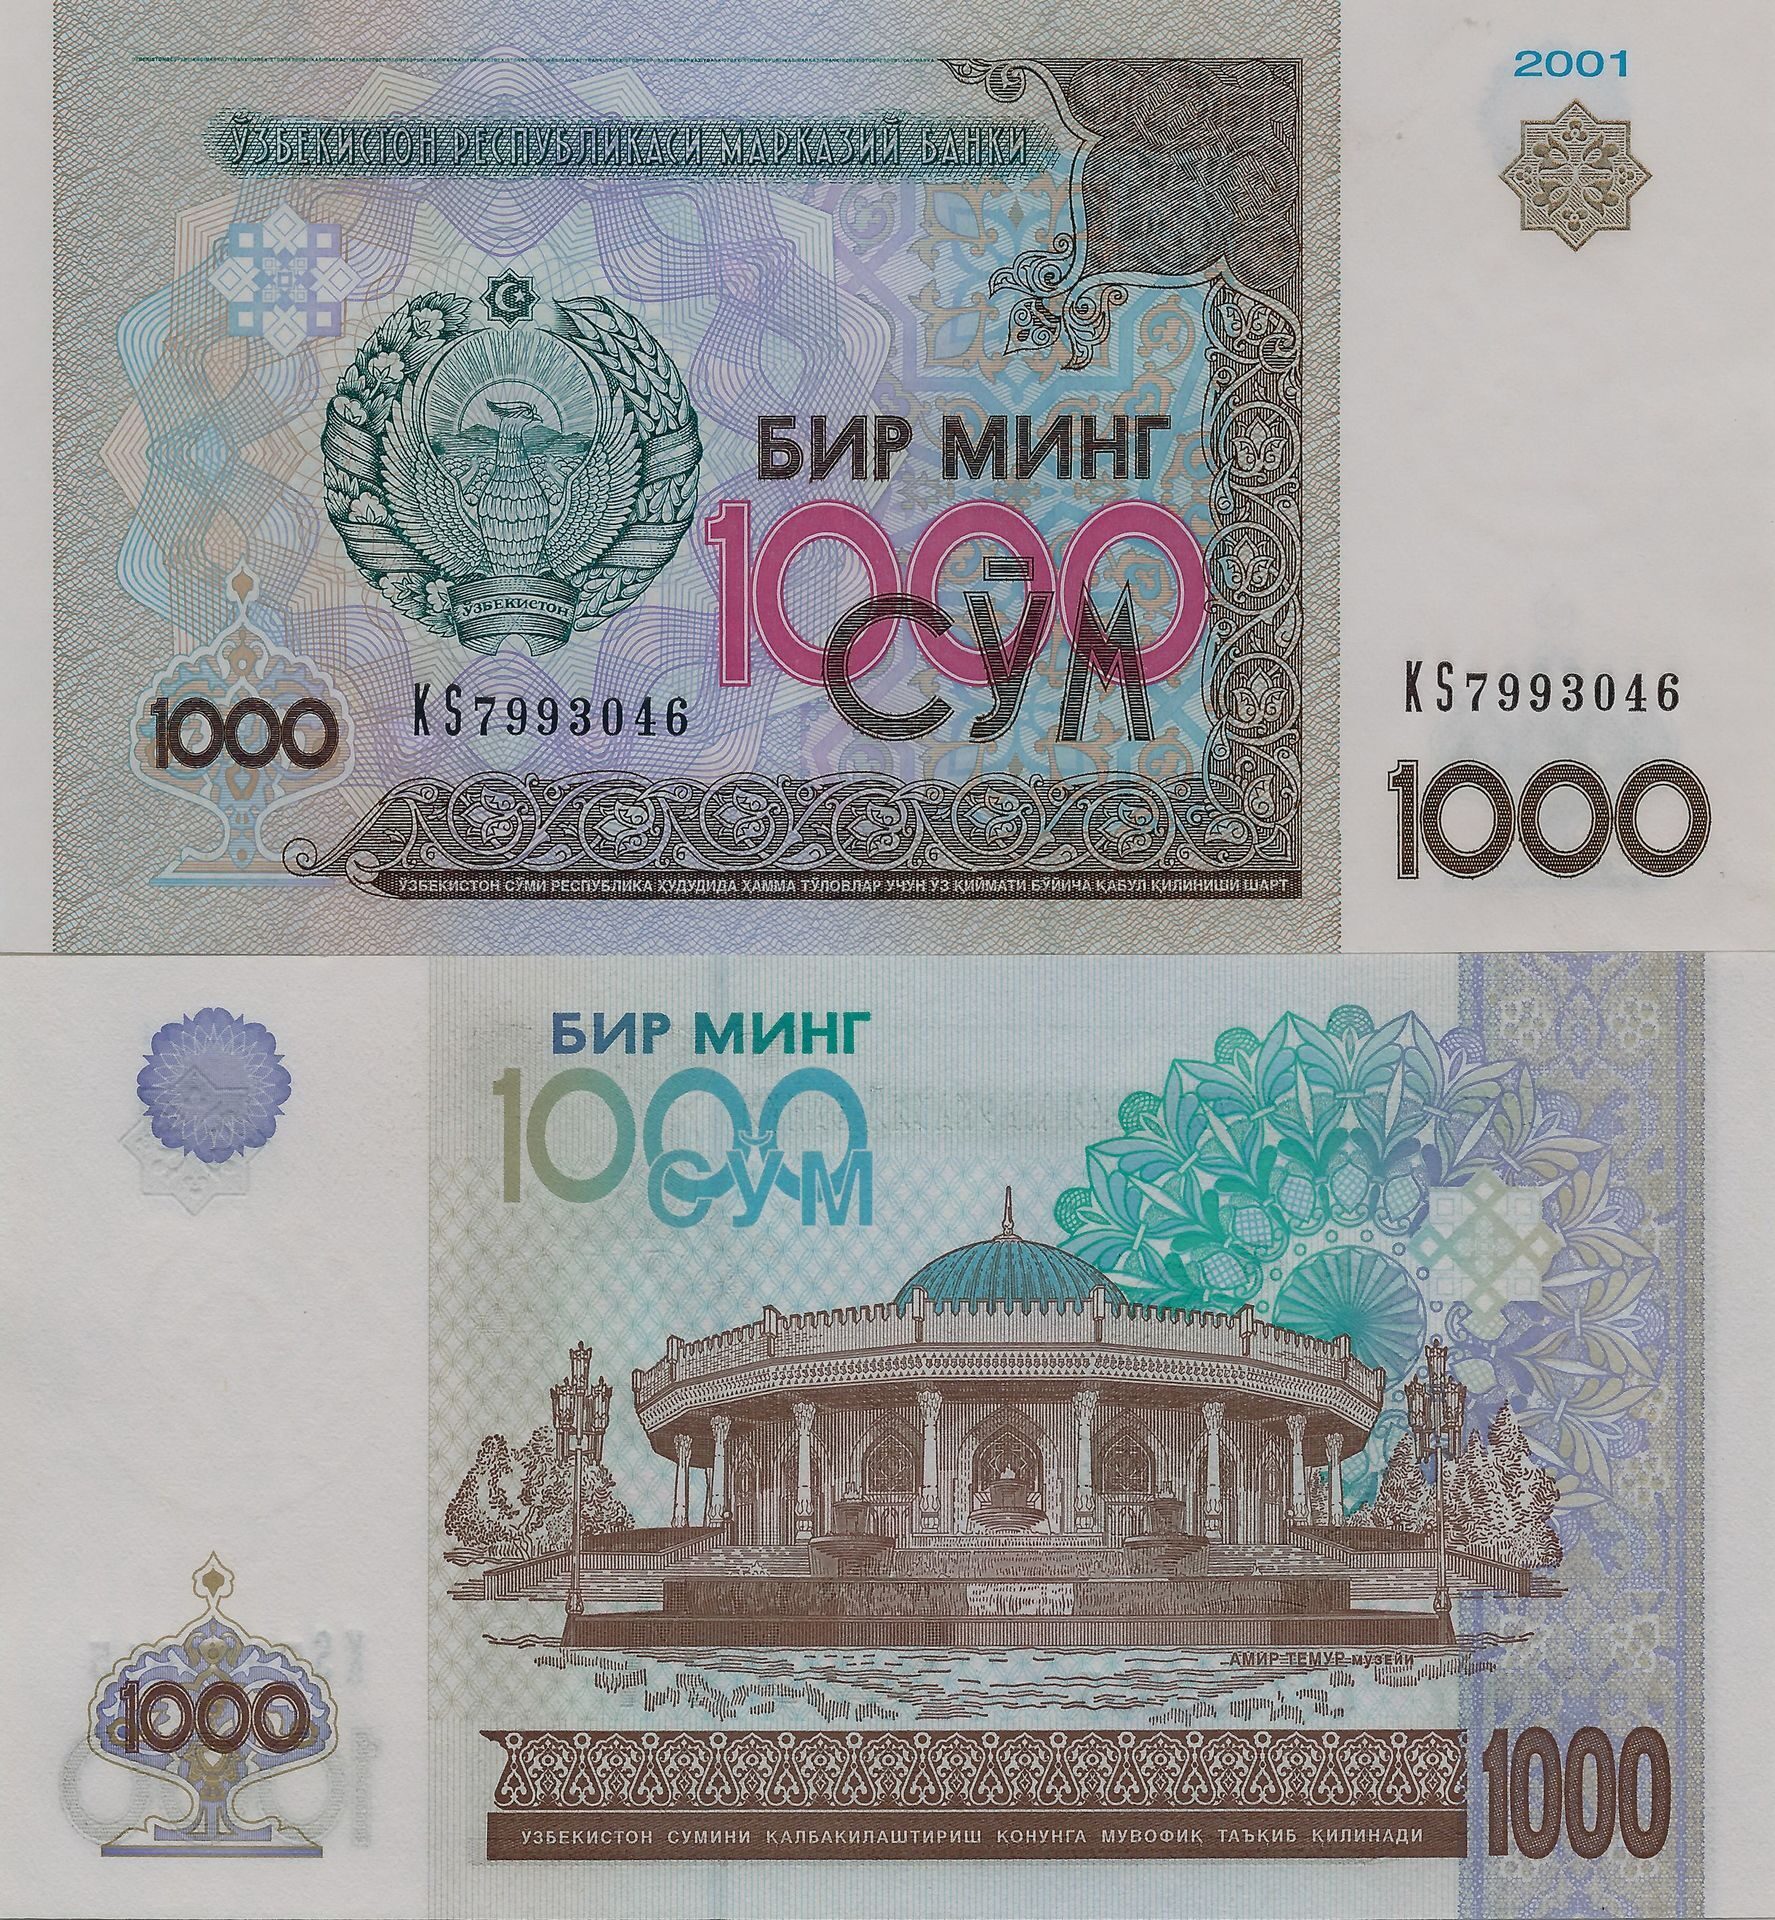 Узбекистан 1000 сум 2001 года. 1000 Сум купюра. 1000 Сум в рублях. Деньги копюрыв 2001 году.